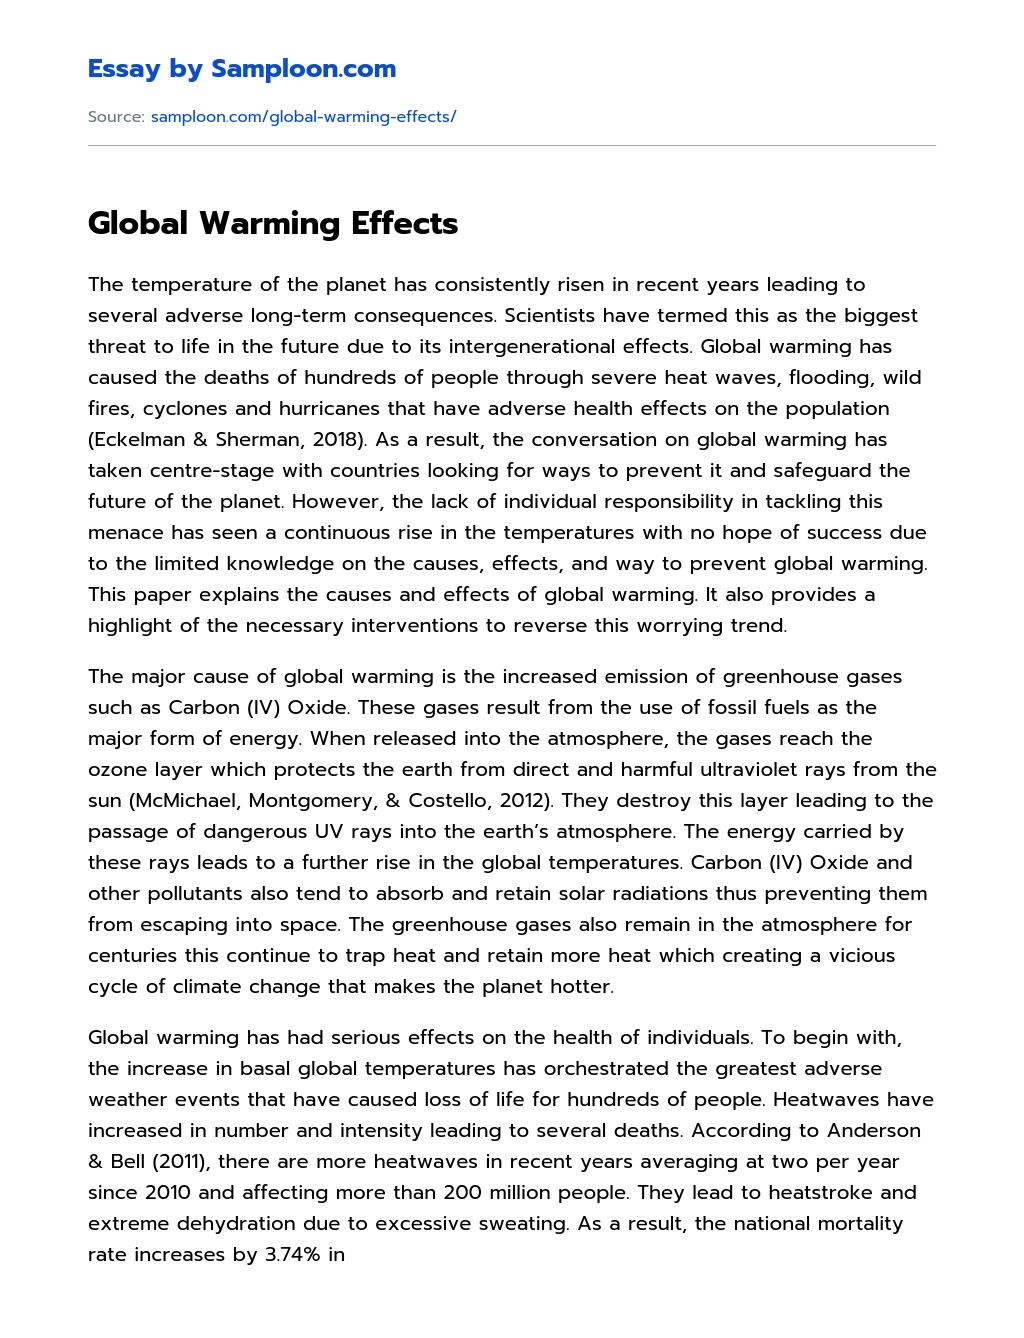 Global Warming Effects essay